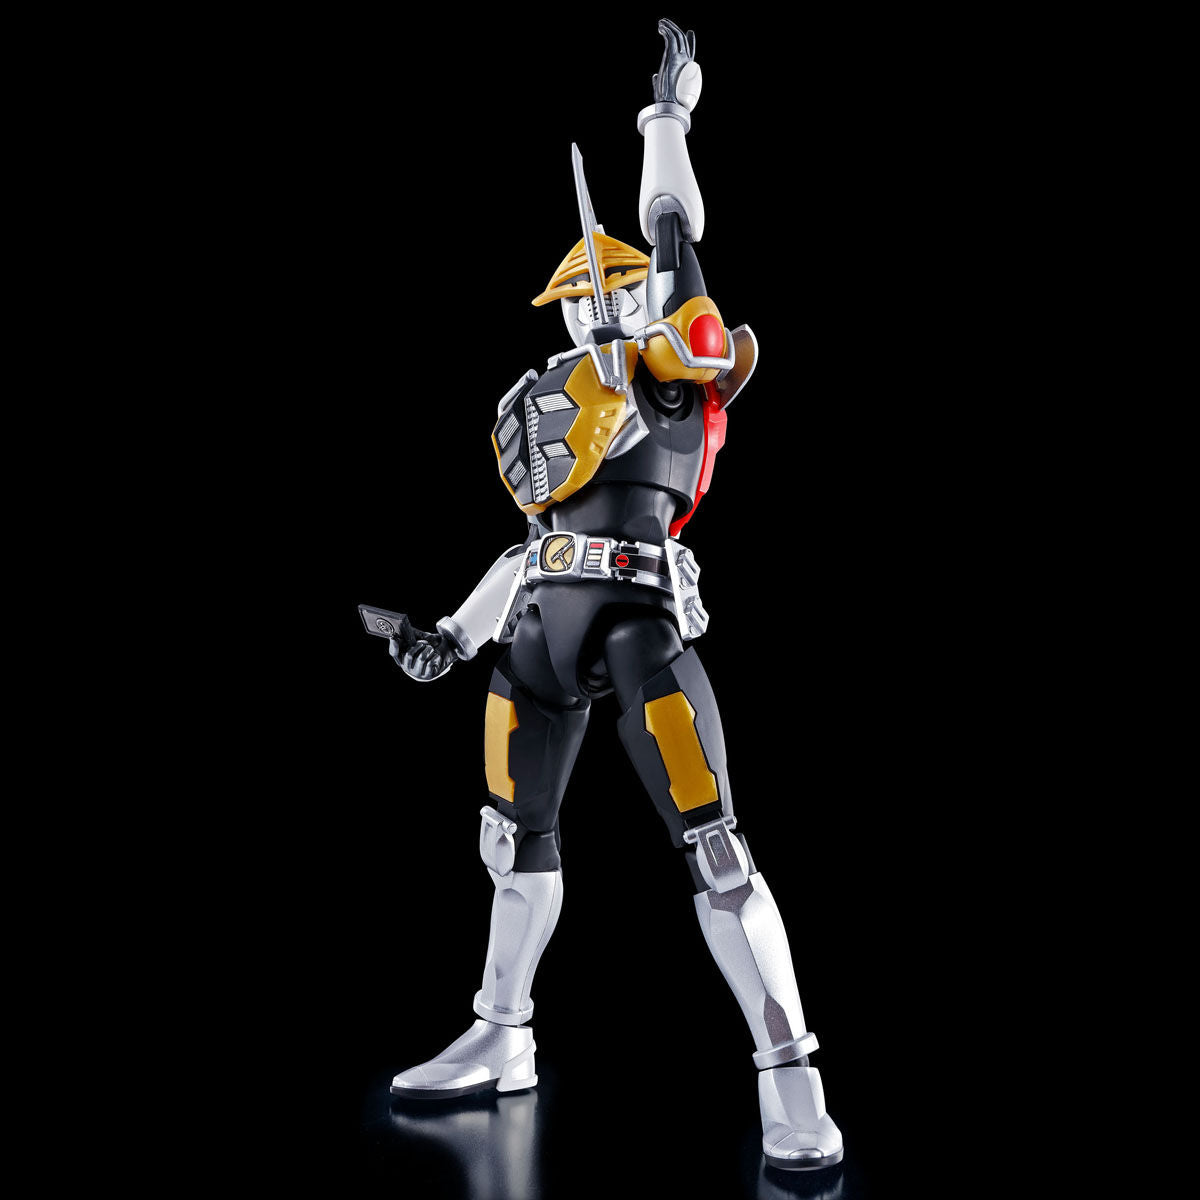 Kamen Rider Den-O (AX Form & Plat Form) Figure-rise Standard - Glacier Hobbies - Bandai